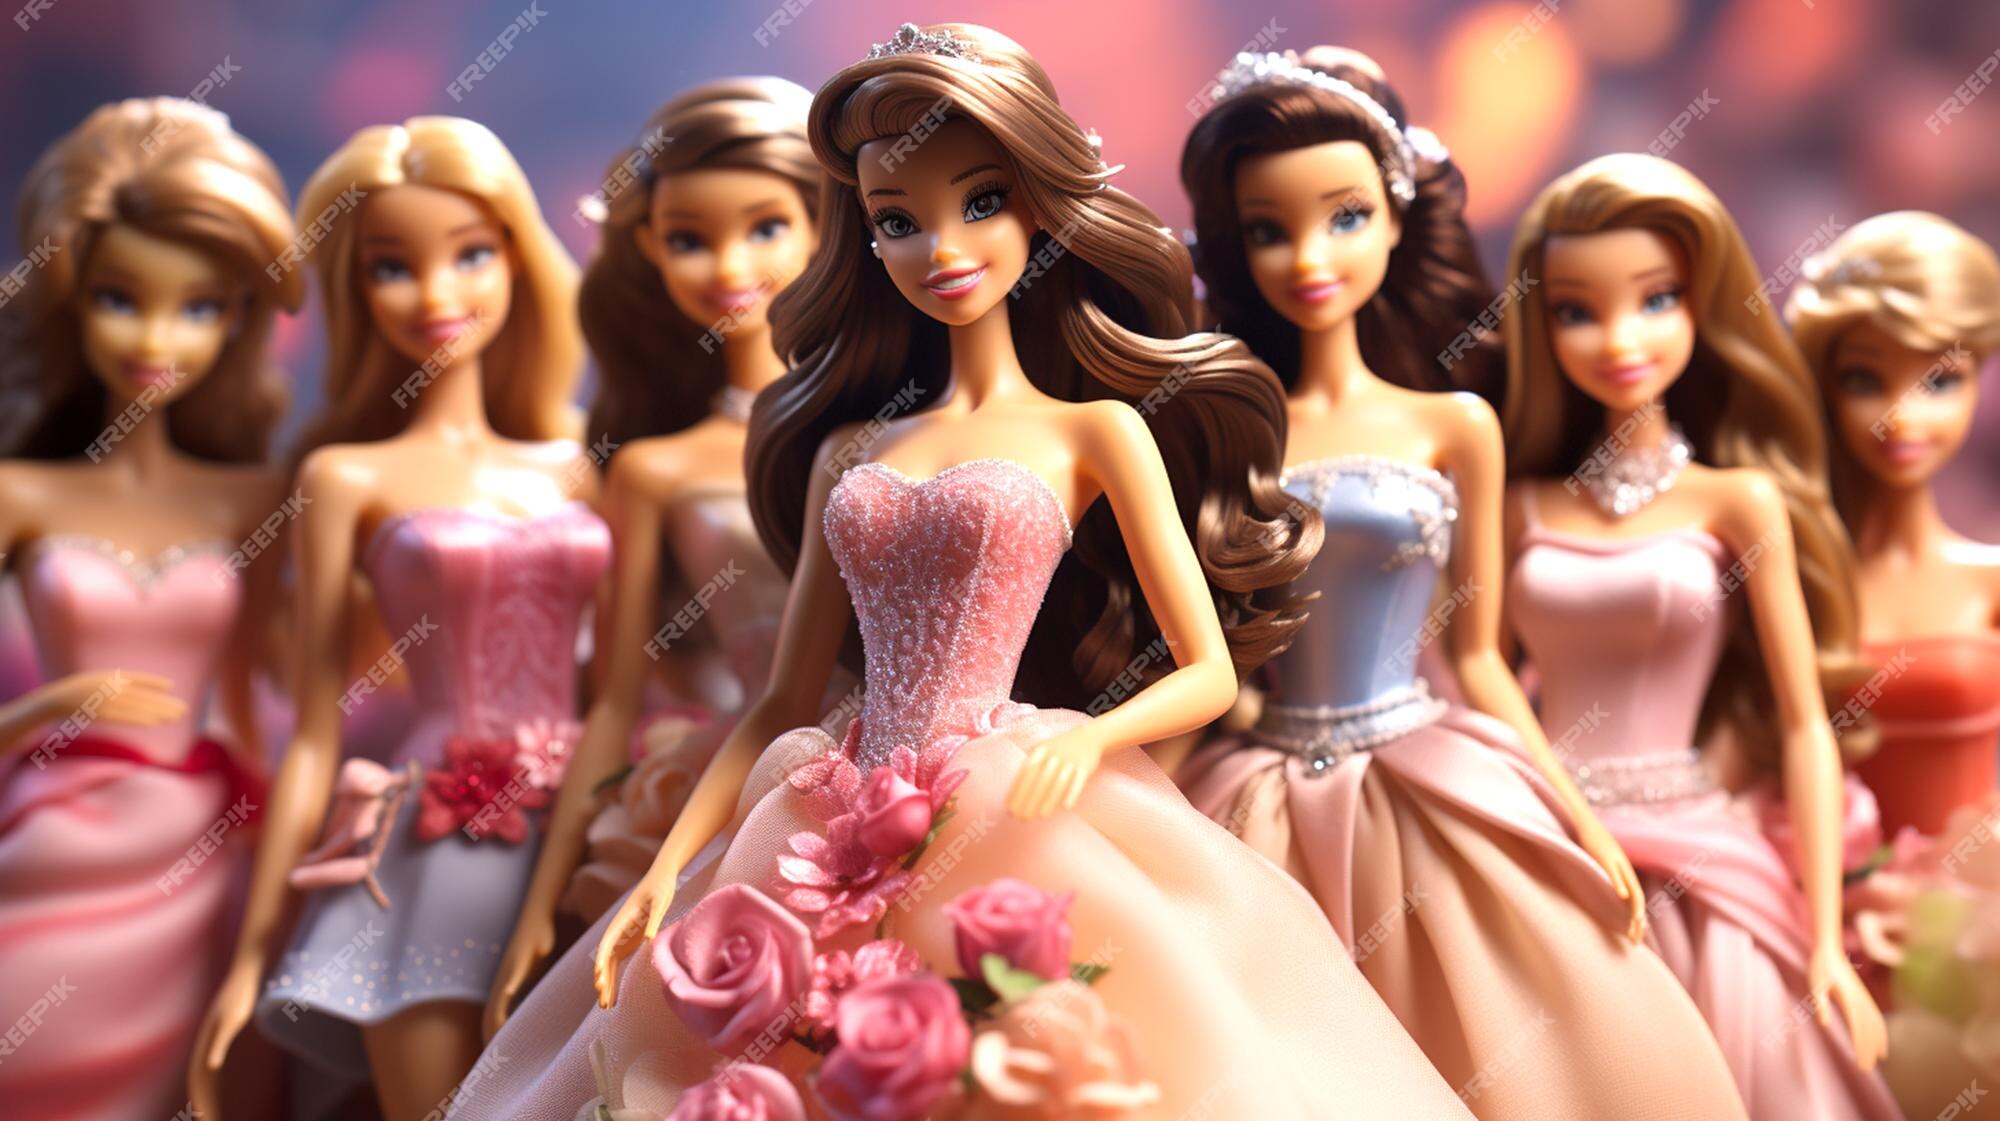 Como fazer roupa da Barbie bonecas 👗 com bexigas